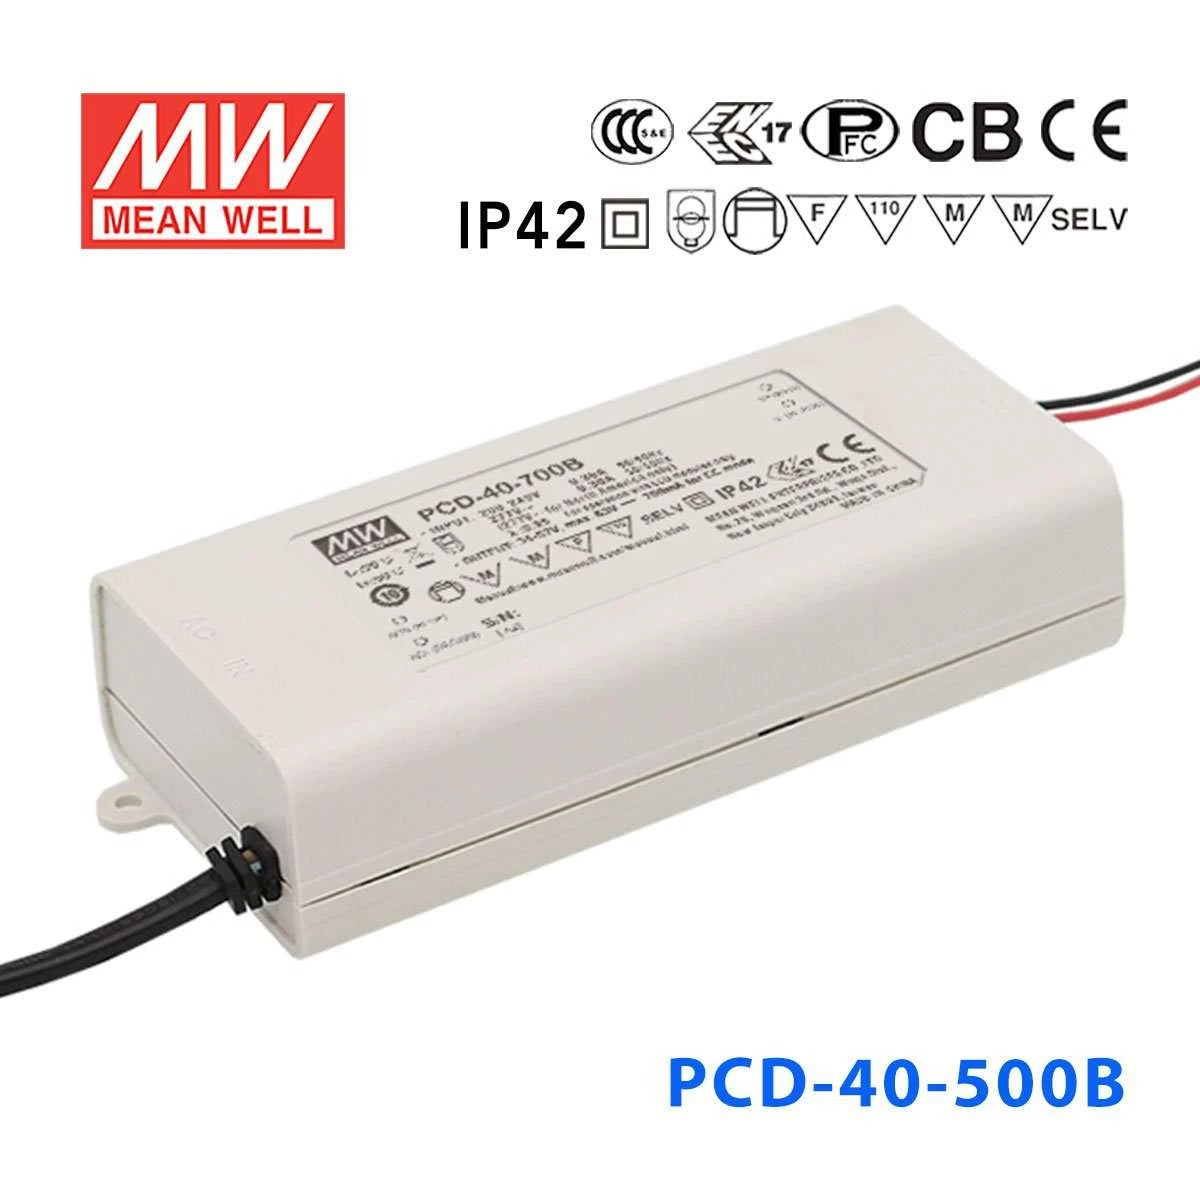 Mean Well PCD-40-500B Power Supply 40W  500mA